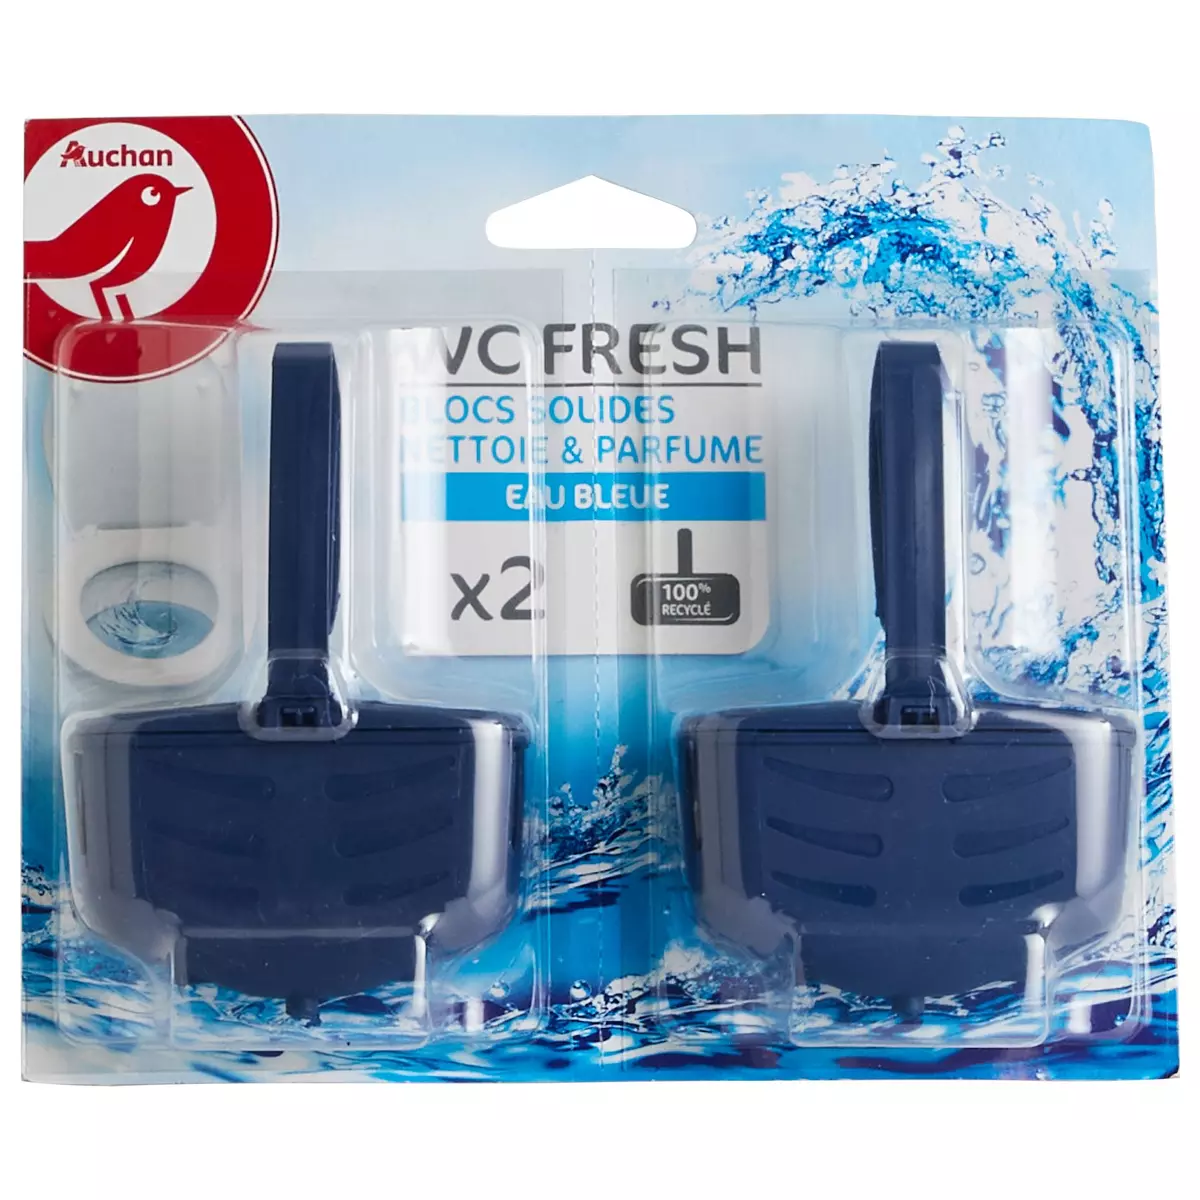 AUCHAN Blocs Wc Fresh nettoie et parfume eau bleue 2 blocs pas